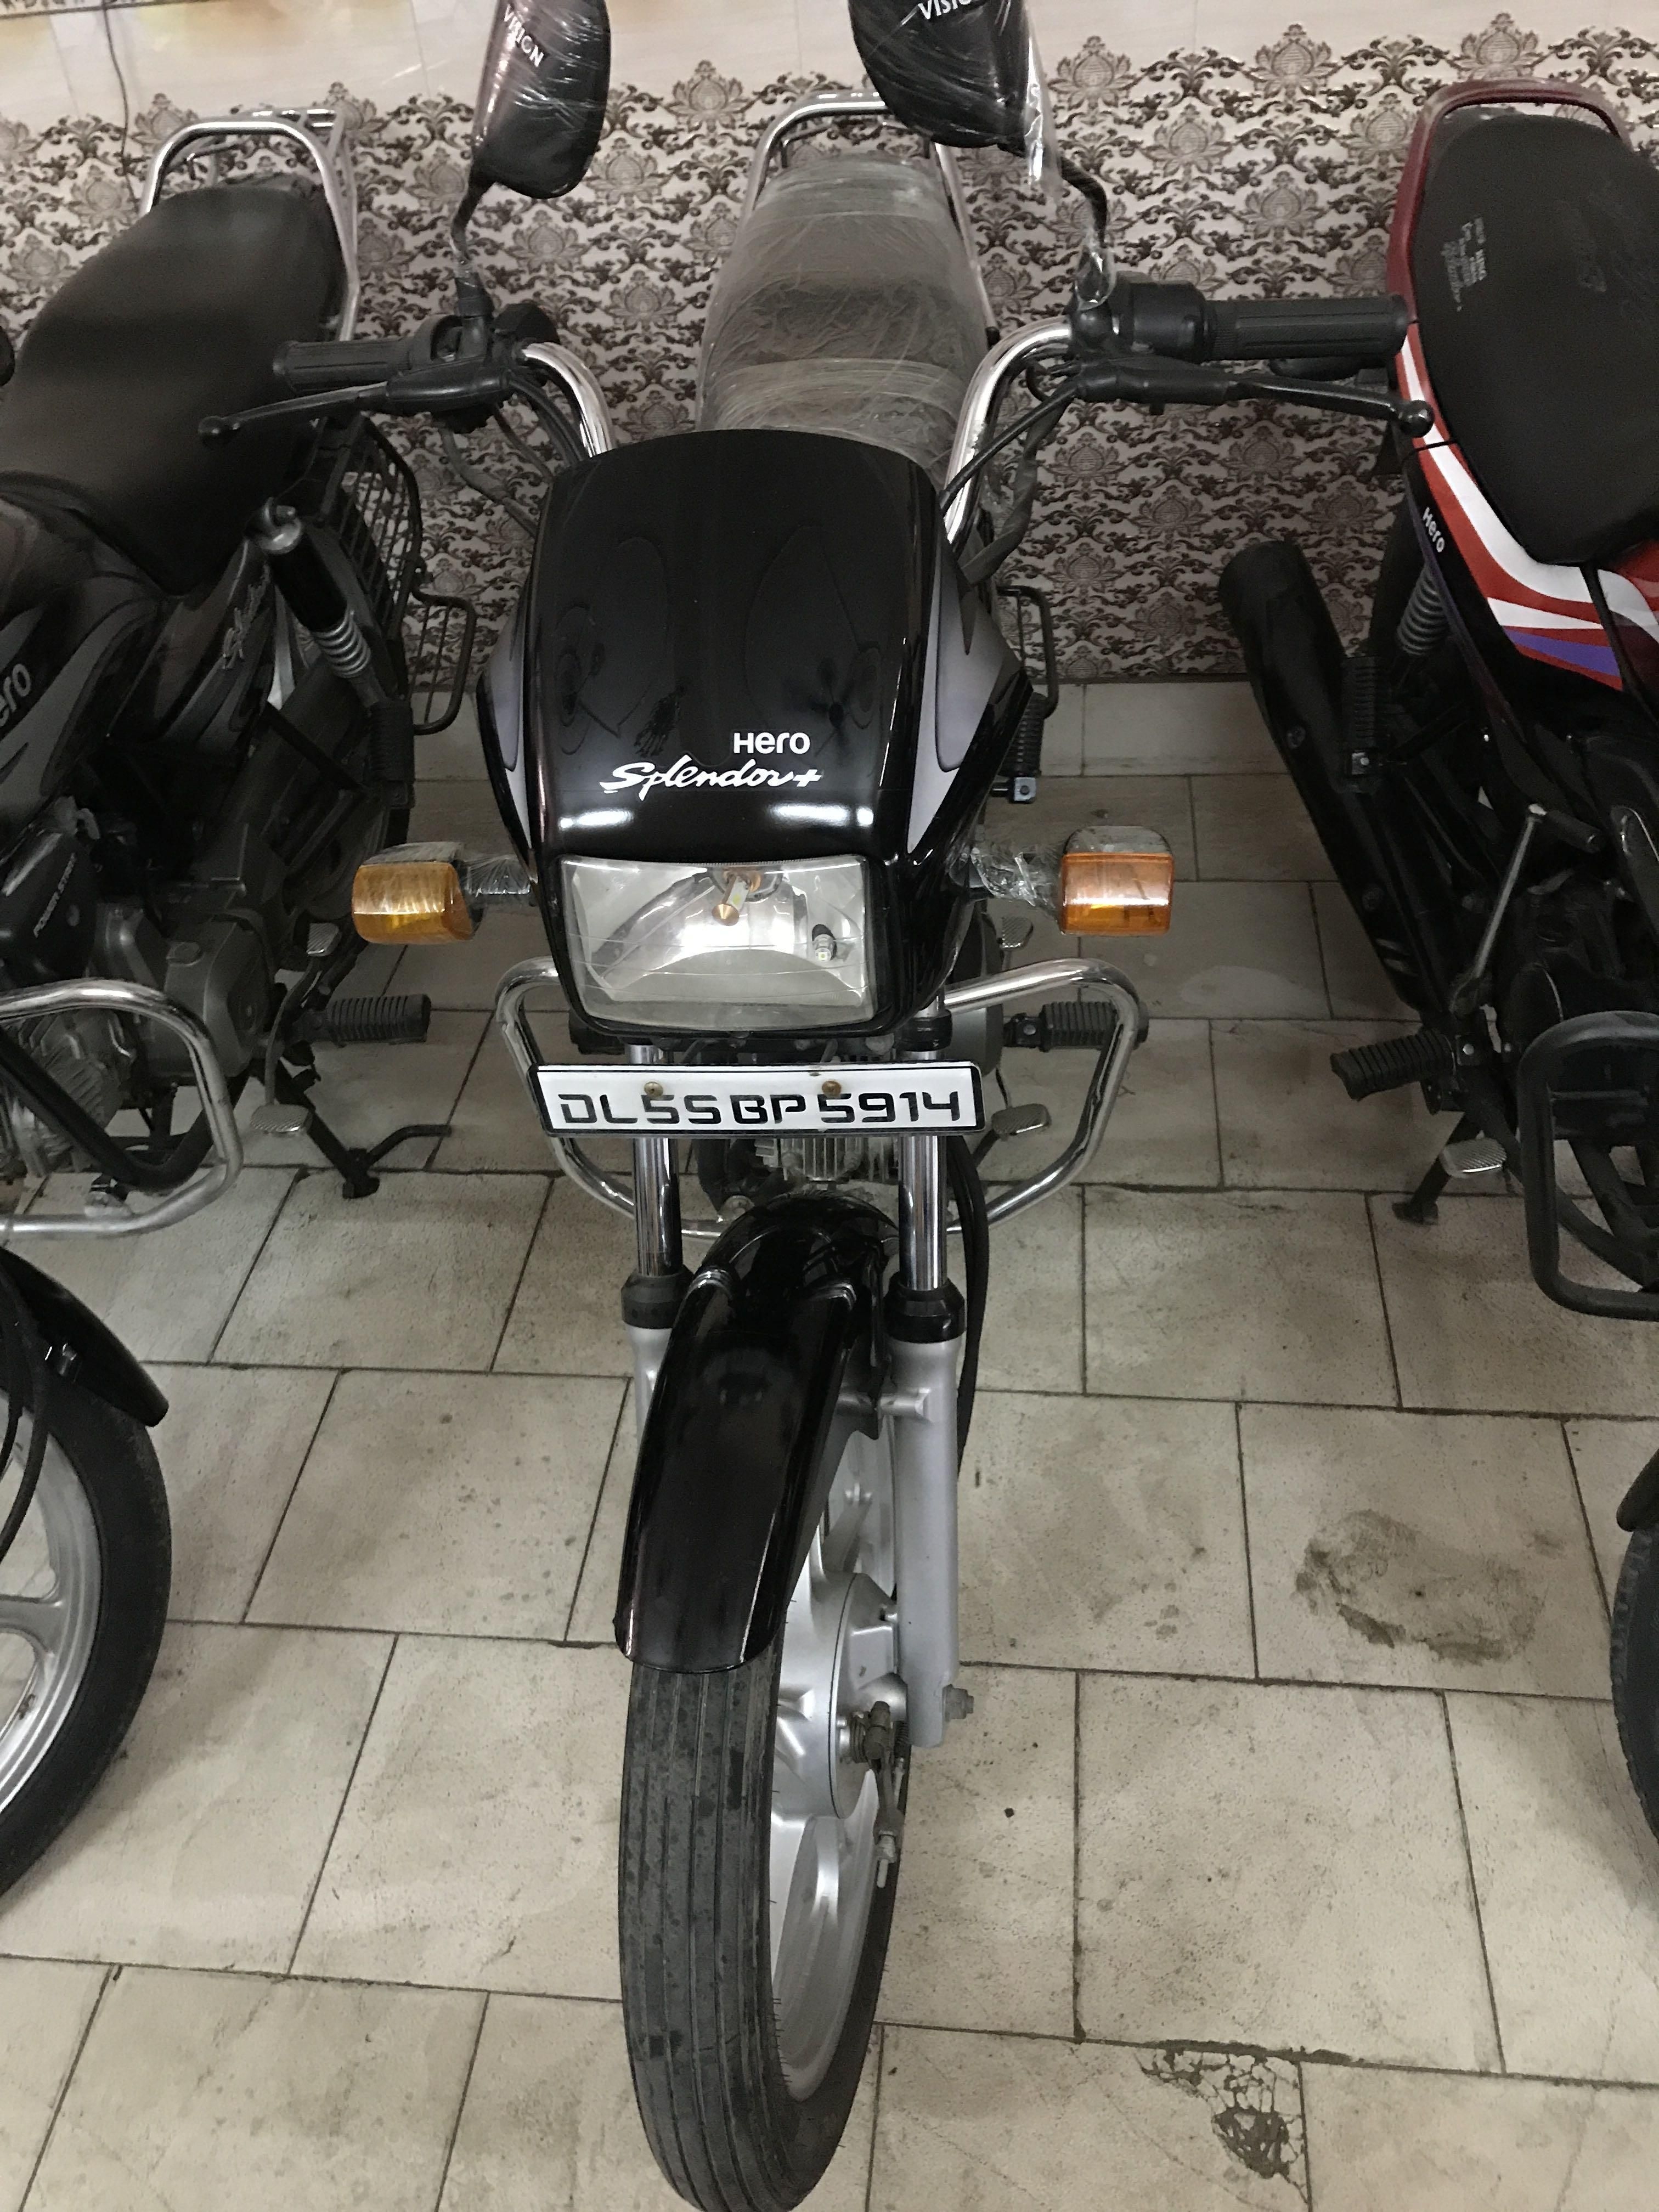 Hero Splendor Plus Bike For Sale In Delhi Id 1418748175 Droom